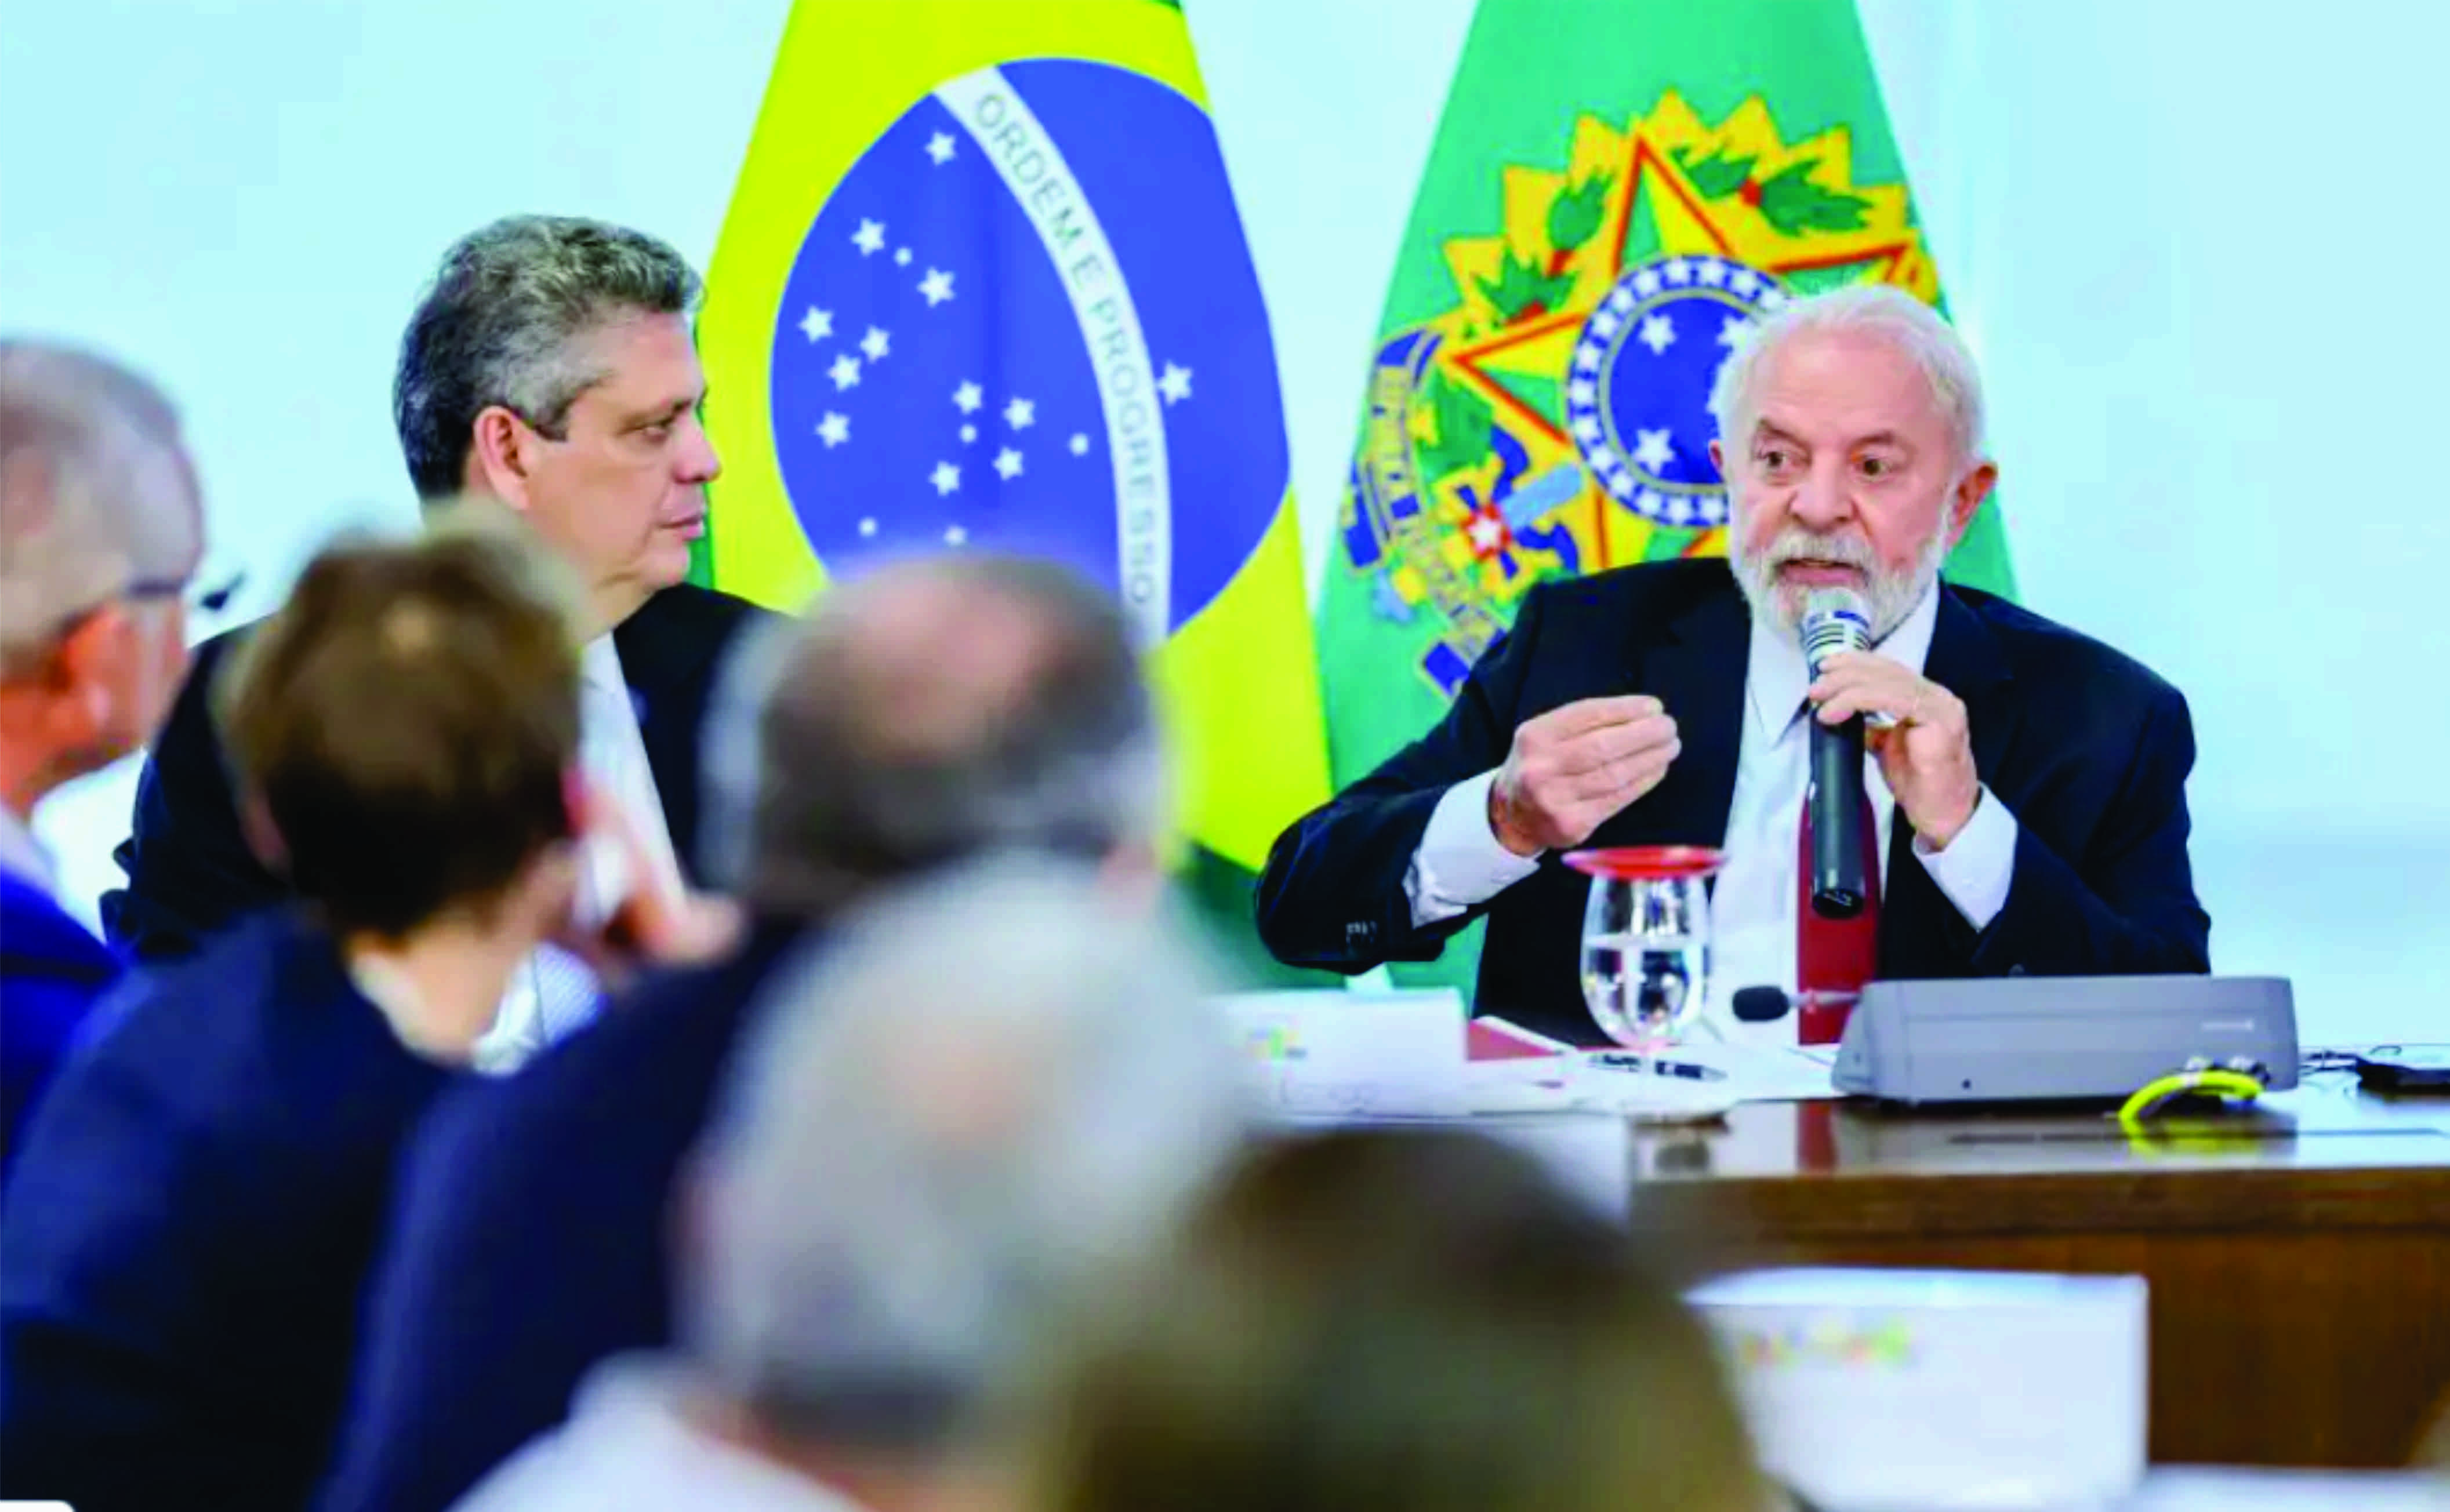 Ato de fascista não me preocupa, diz Lula sobre Bolsonaro no Rio